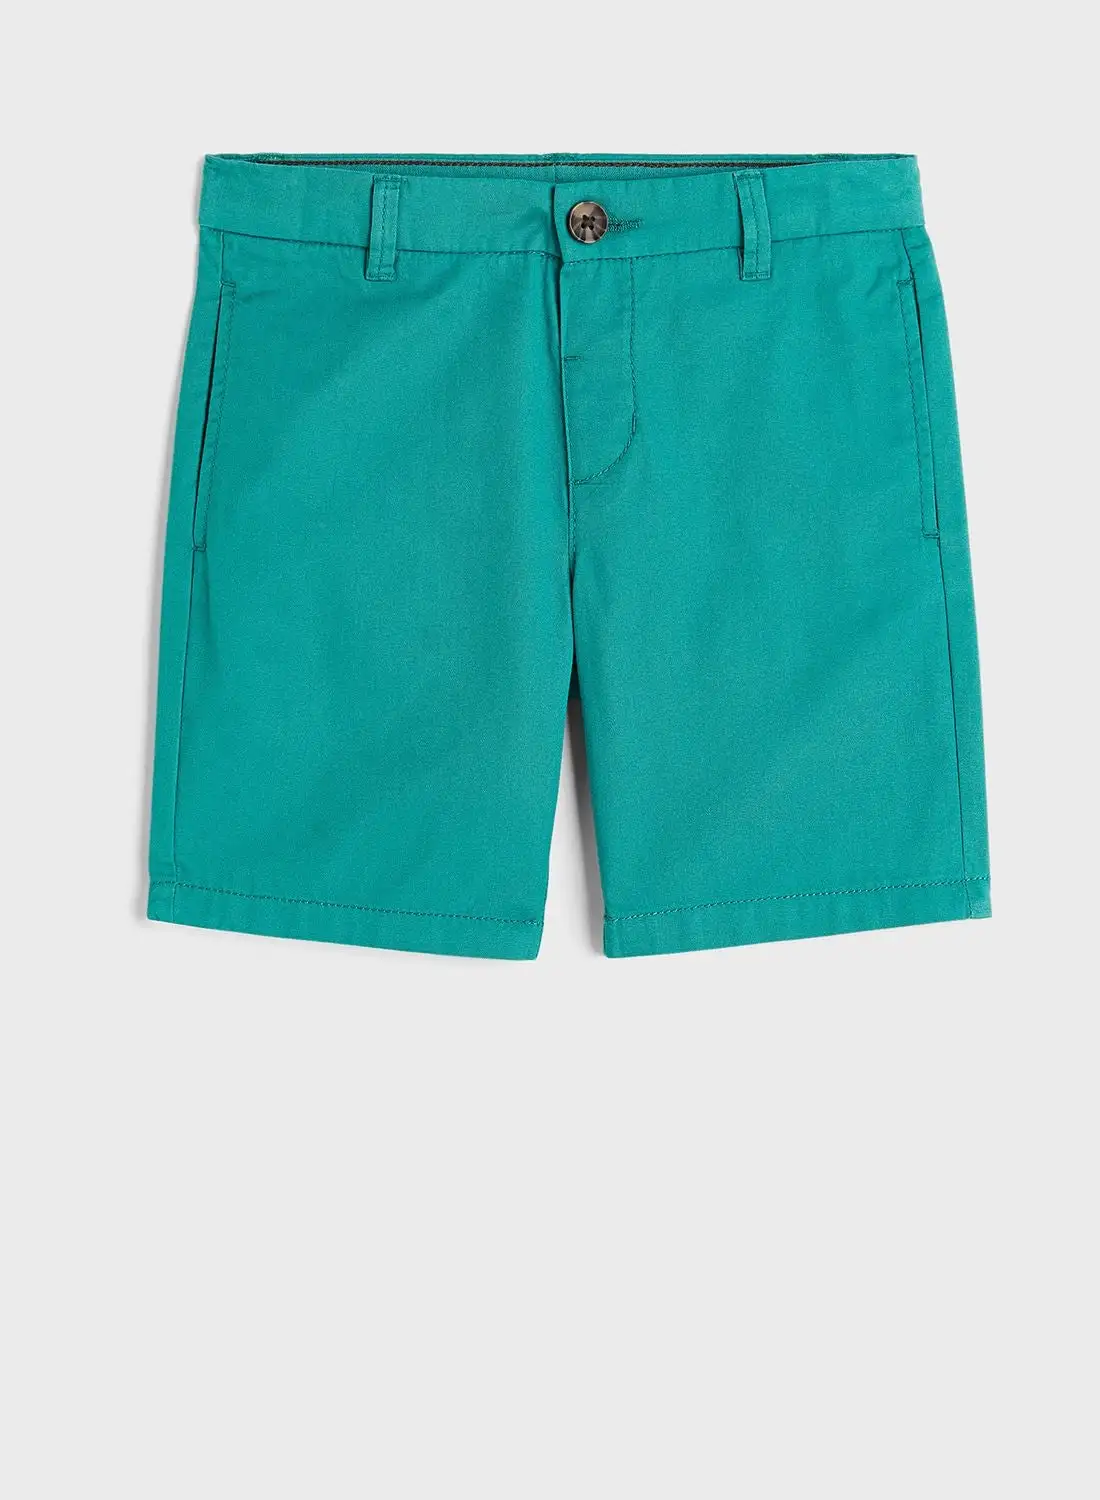 H&M Kids Cotton Chino Shorts